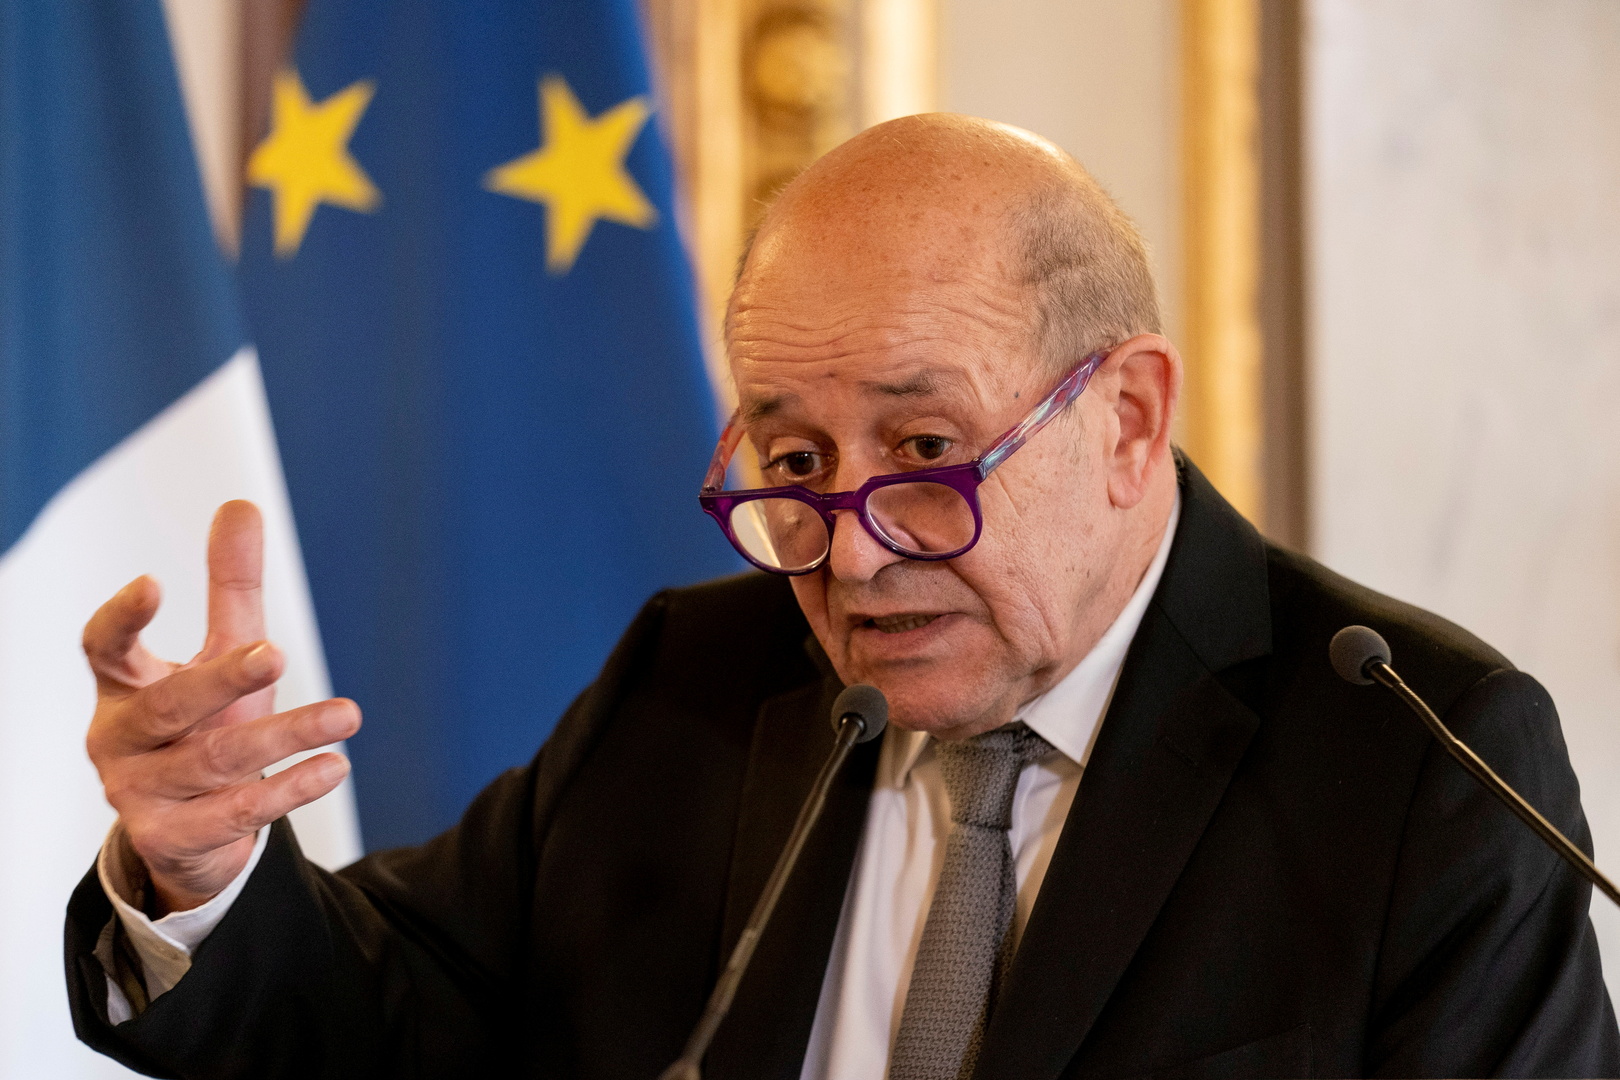 لودريان: فرنسا تواكب الأزمة الخطيرة في لبنان وعليهم الإسراع بتشكيل الحكومة